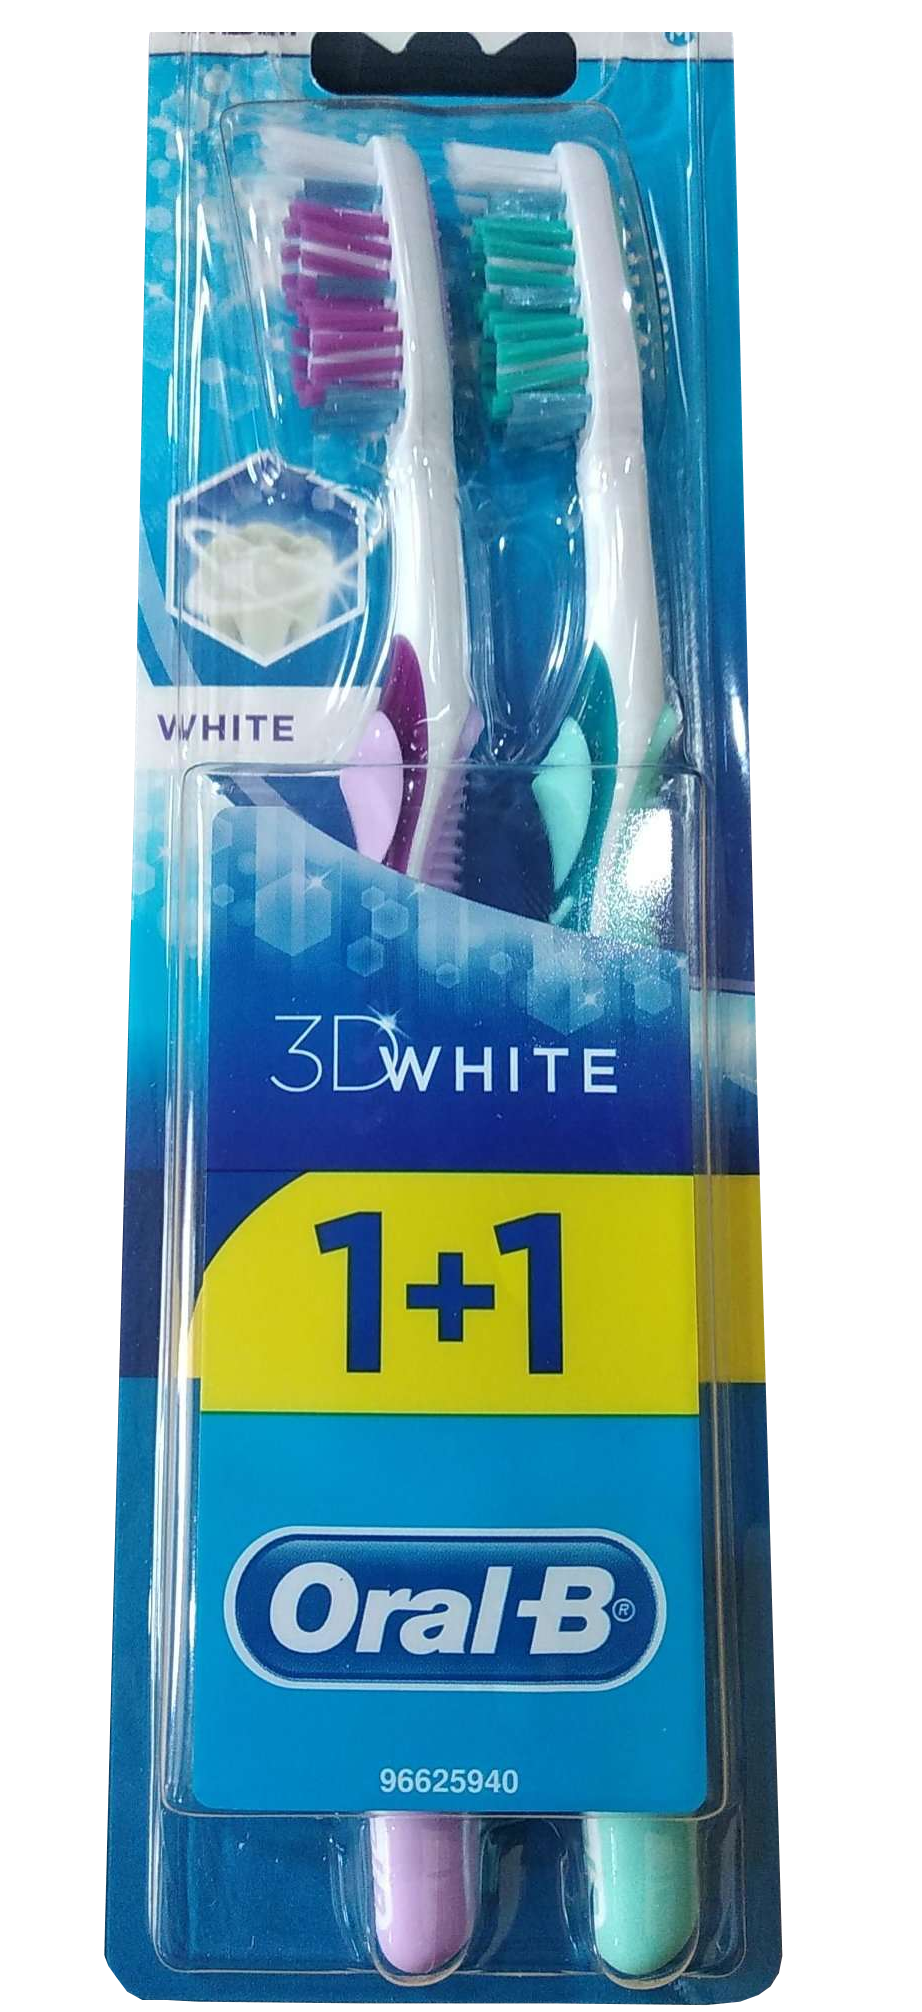 Зубная щетка Oral-B 3D White Отбеливание, средняя, фиолетовый с бирюзовым, 2 шт. - фото 1